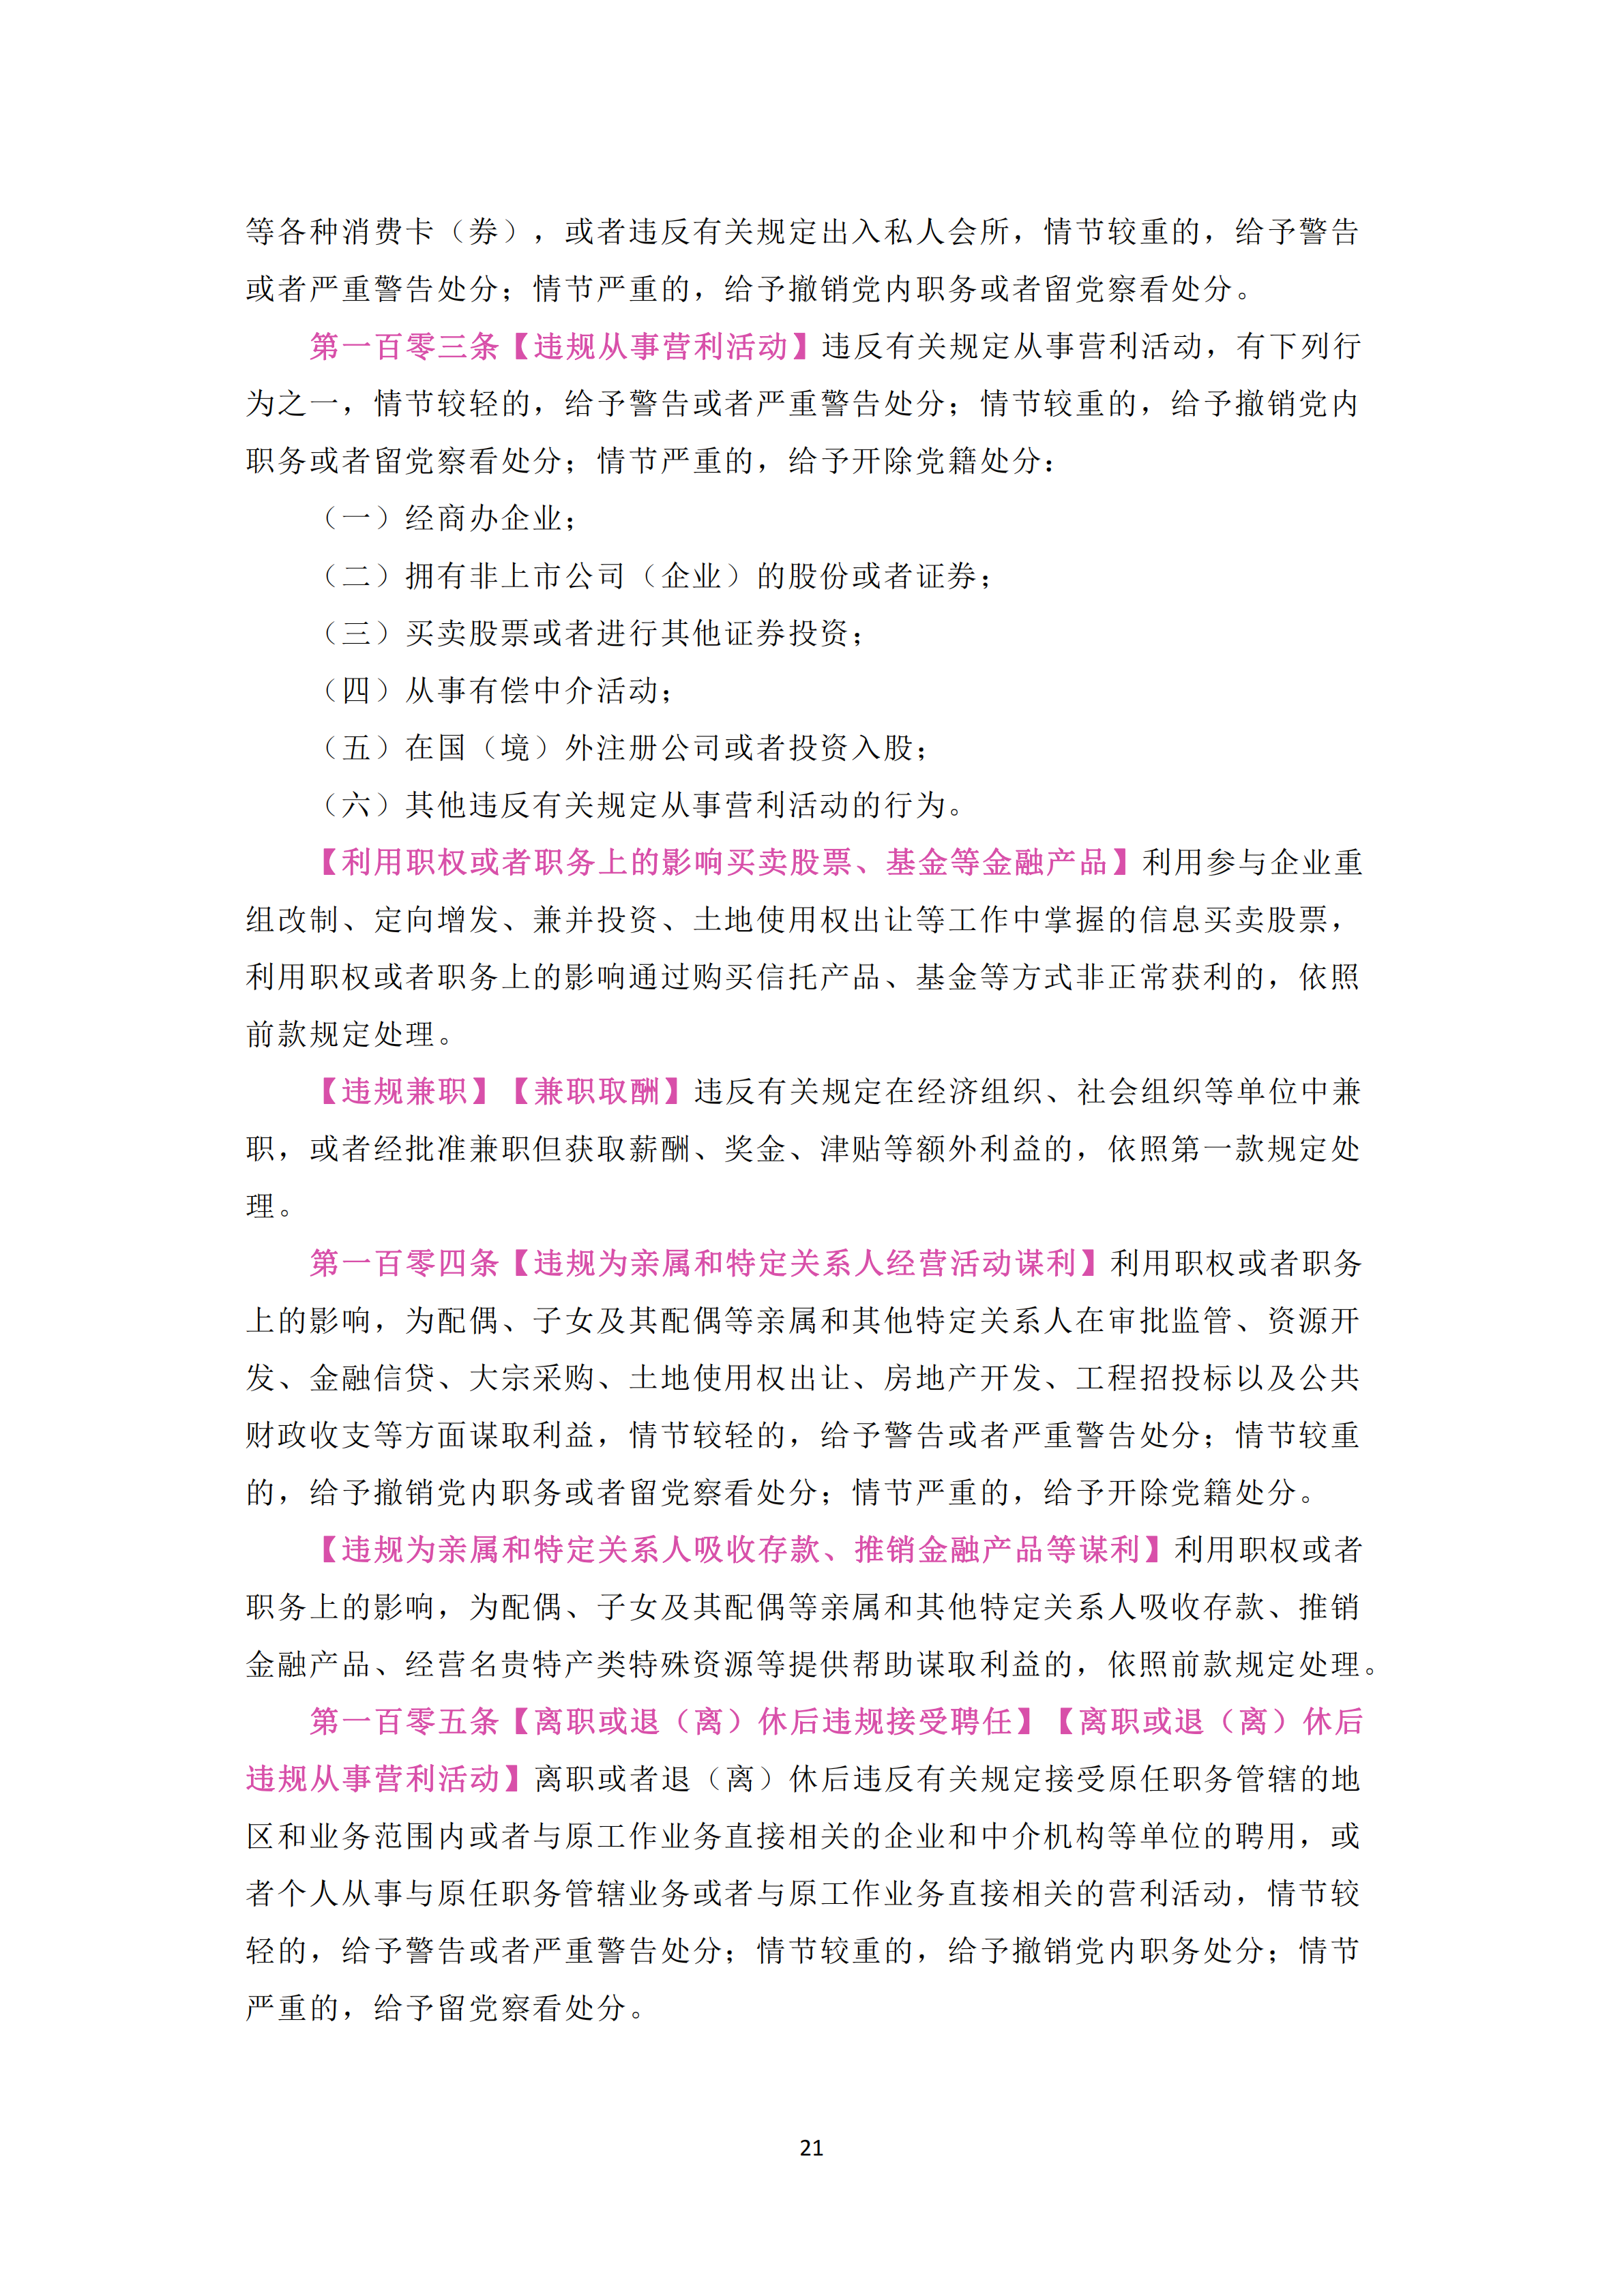 中国共产党纪律处分条例_20.png